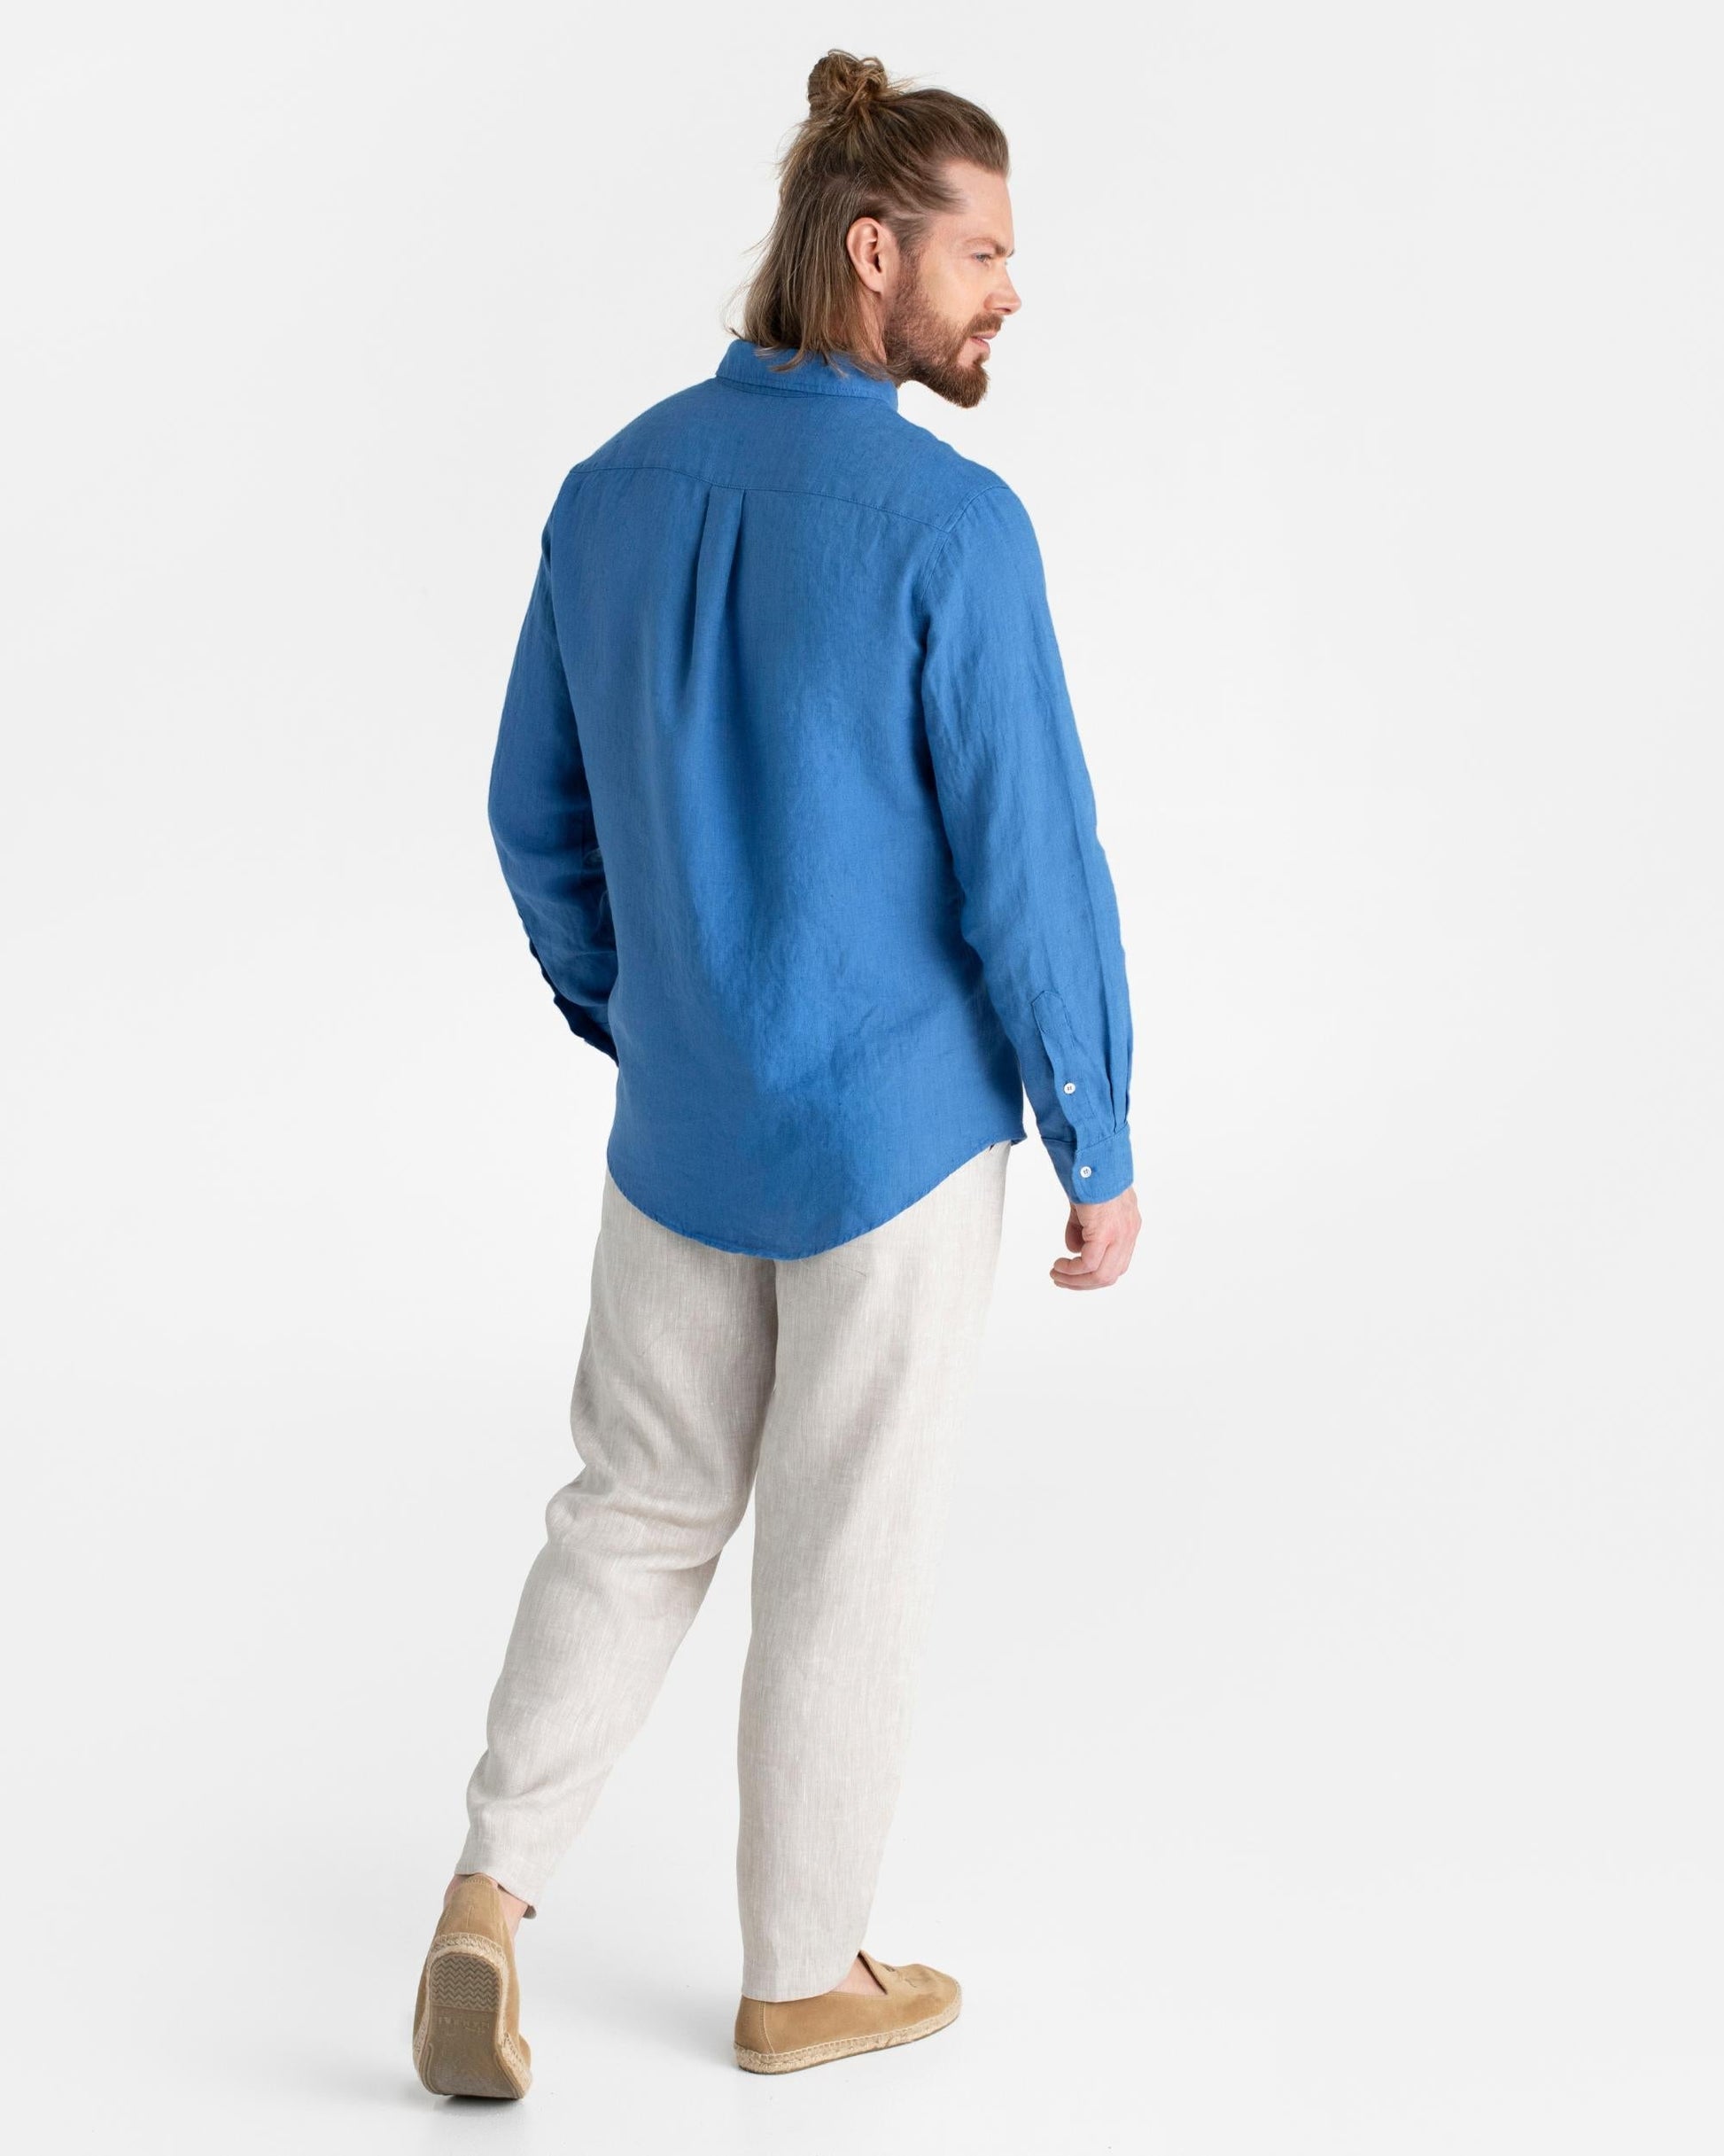 Classic men's linen shirt SINTRA in Cobalt blue - MagicLinen